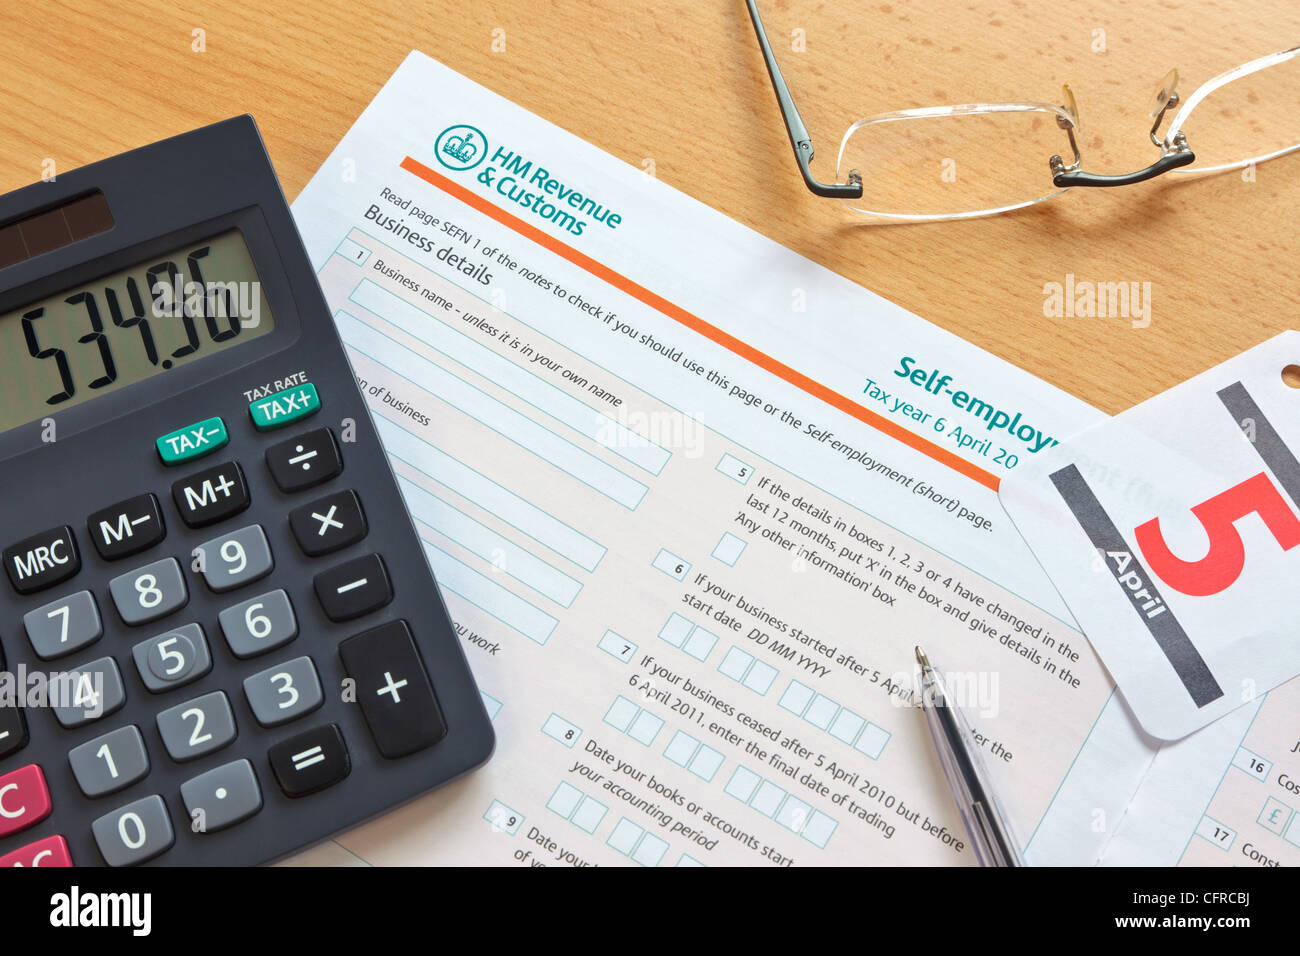 Photo d'un UK self employment formulaire d'impôt, la date limite pour l'année d'imposition est 5 avril comme indiqué par le calendrier. Banque D'Images